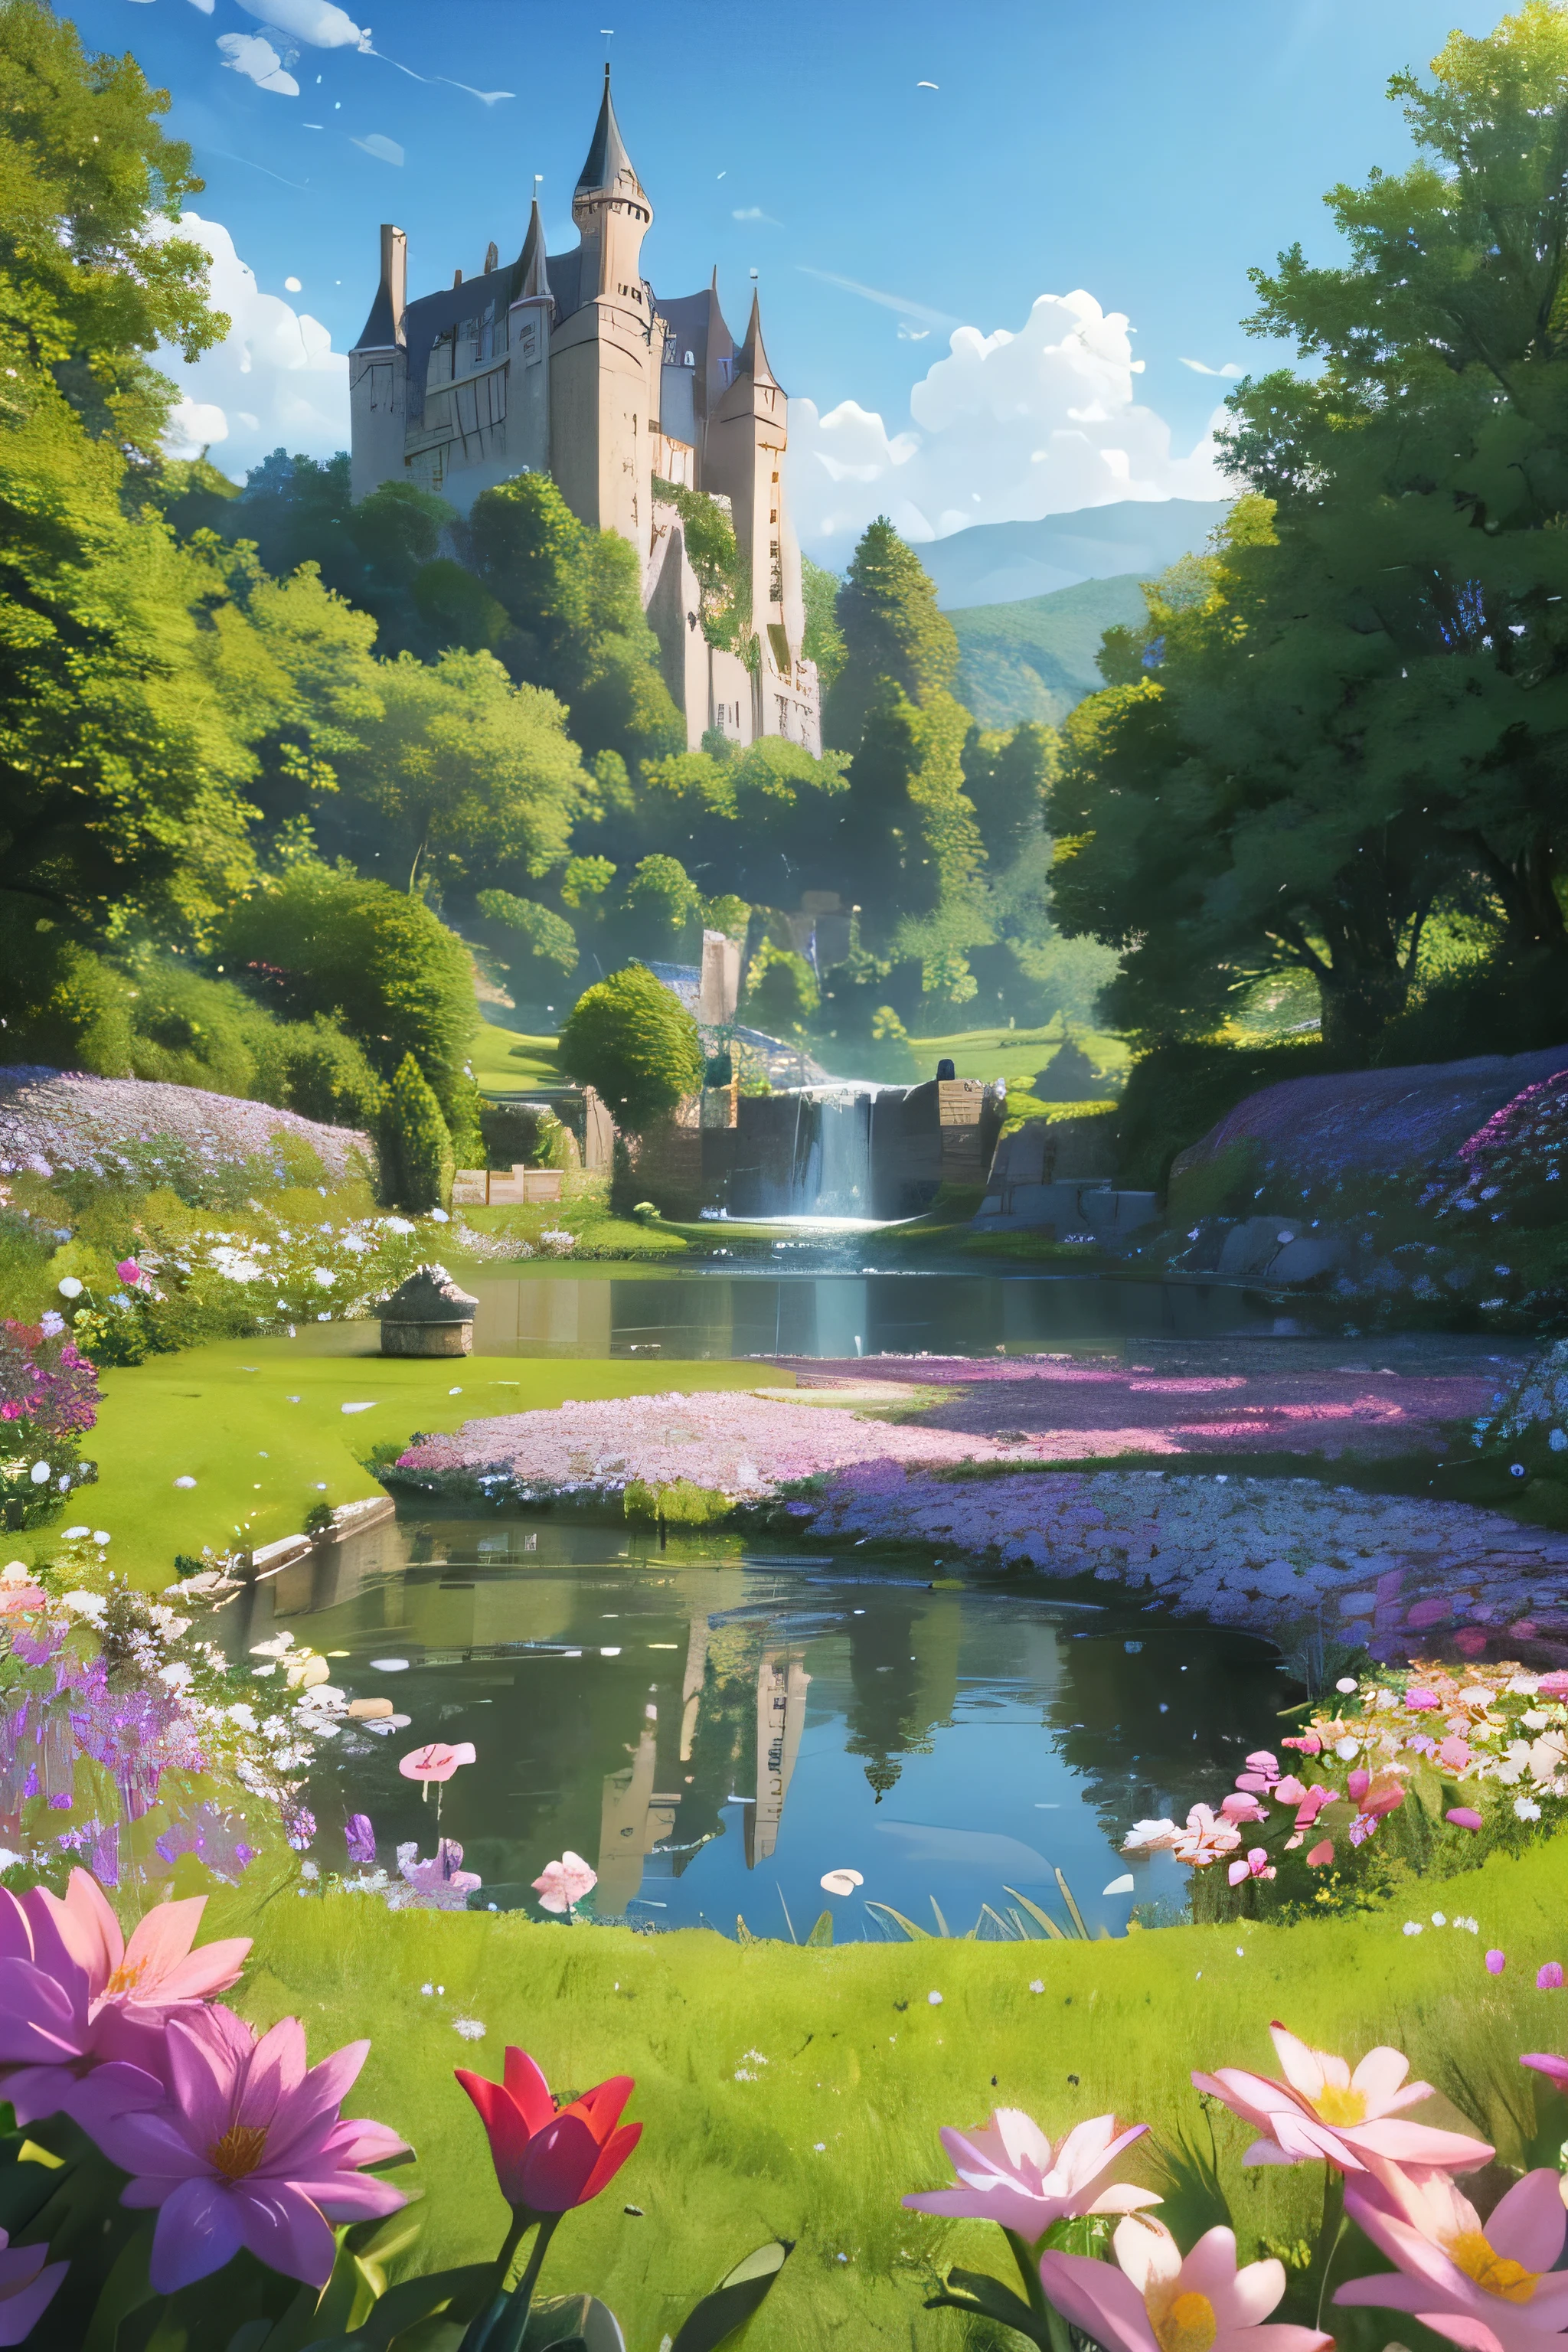 قلعة, يوجد أسفل القلعة جدول من الماء والزهور في الحقل